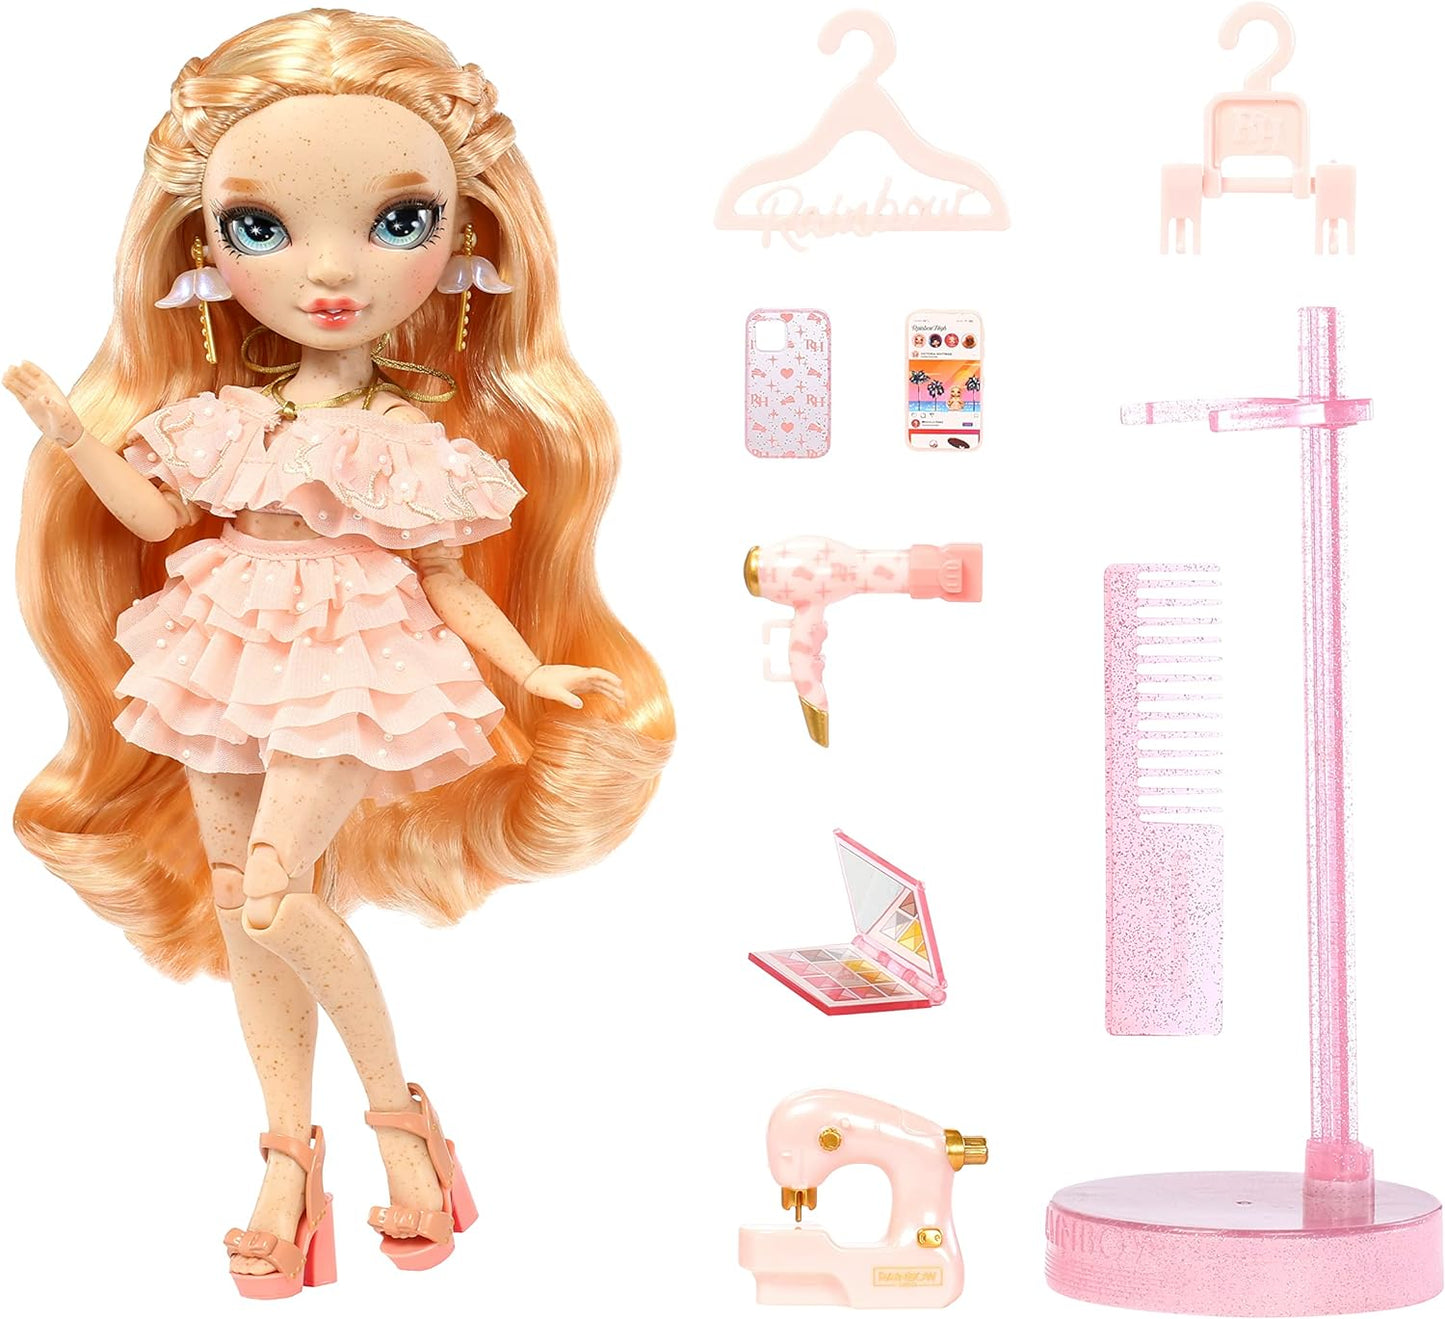 Rainbow High Boneca da moda - VICTORIA WHITMAN - Boneca rosa claro com sardas - Roupas da moda e mais de 10 acessórios coloridos para brincar - Para colecionadores e crianças de 4 a 12 anos